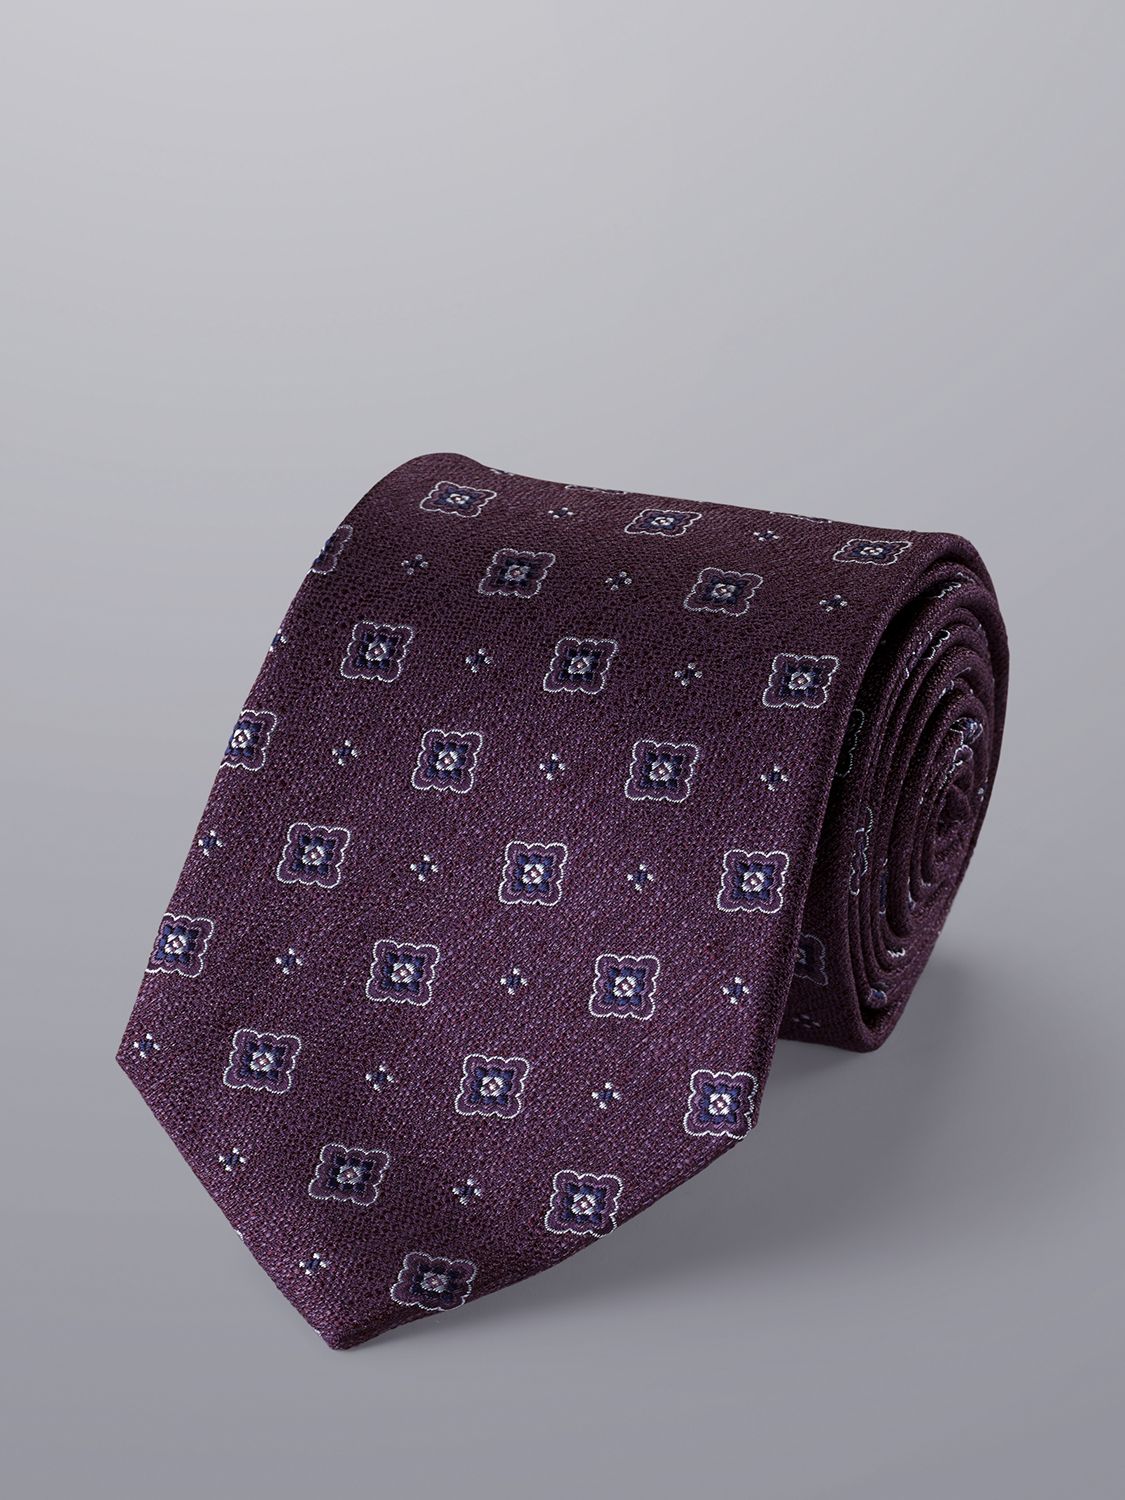 Charles Tyrwhitt Stain Resistant Silk Tie, Blackberry at John Lewis ...